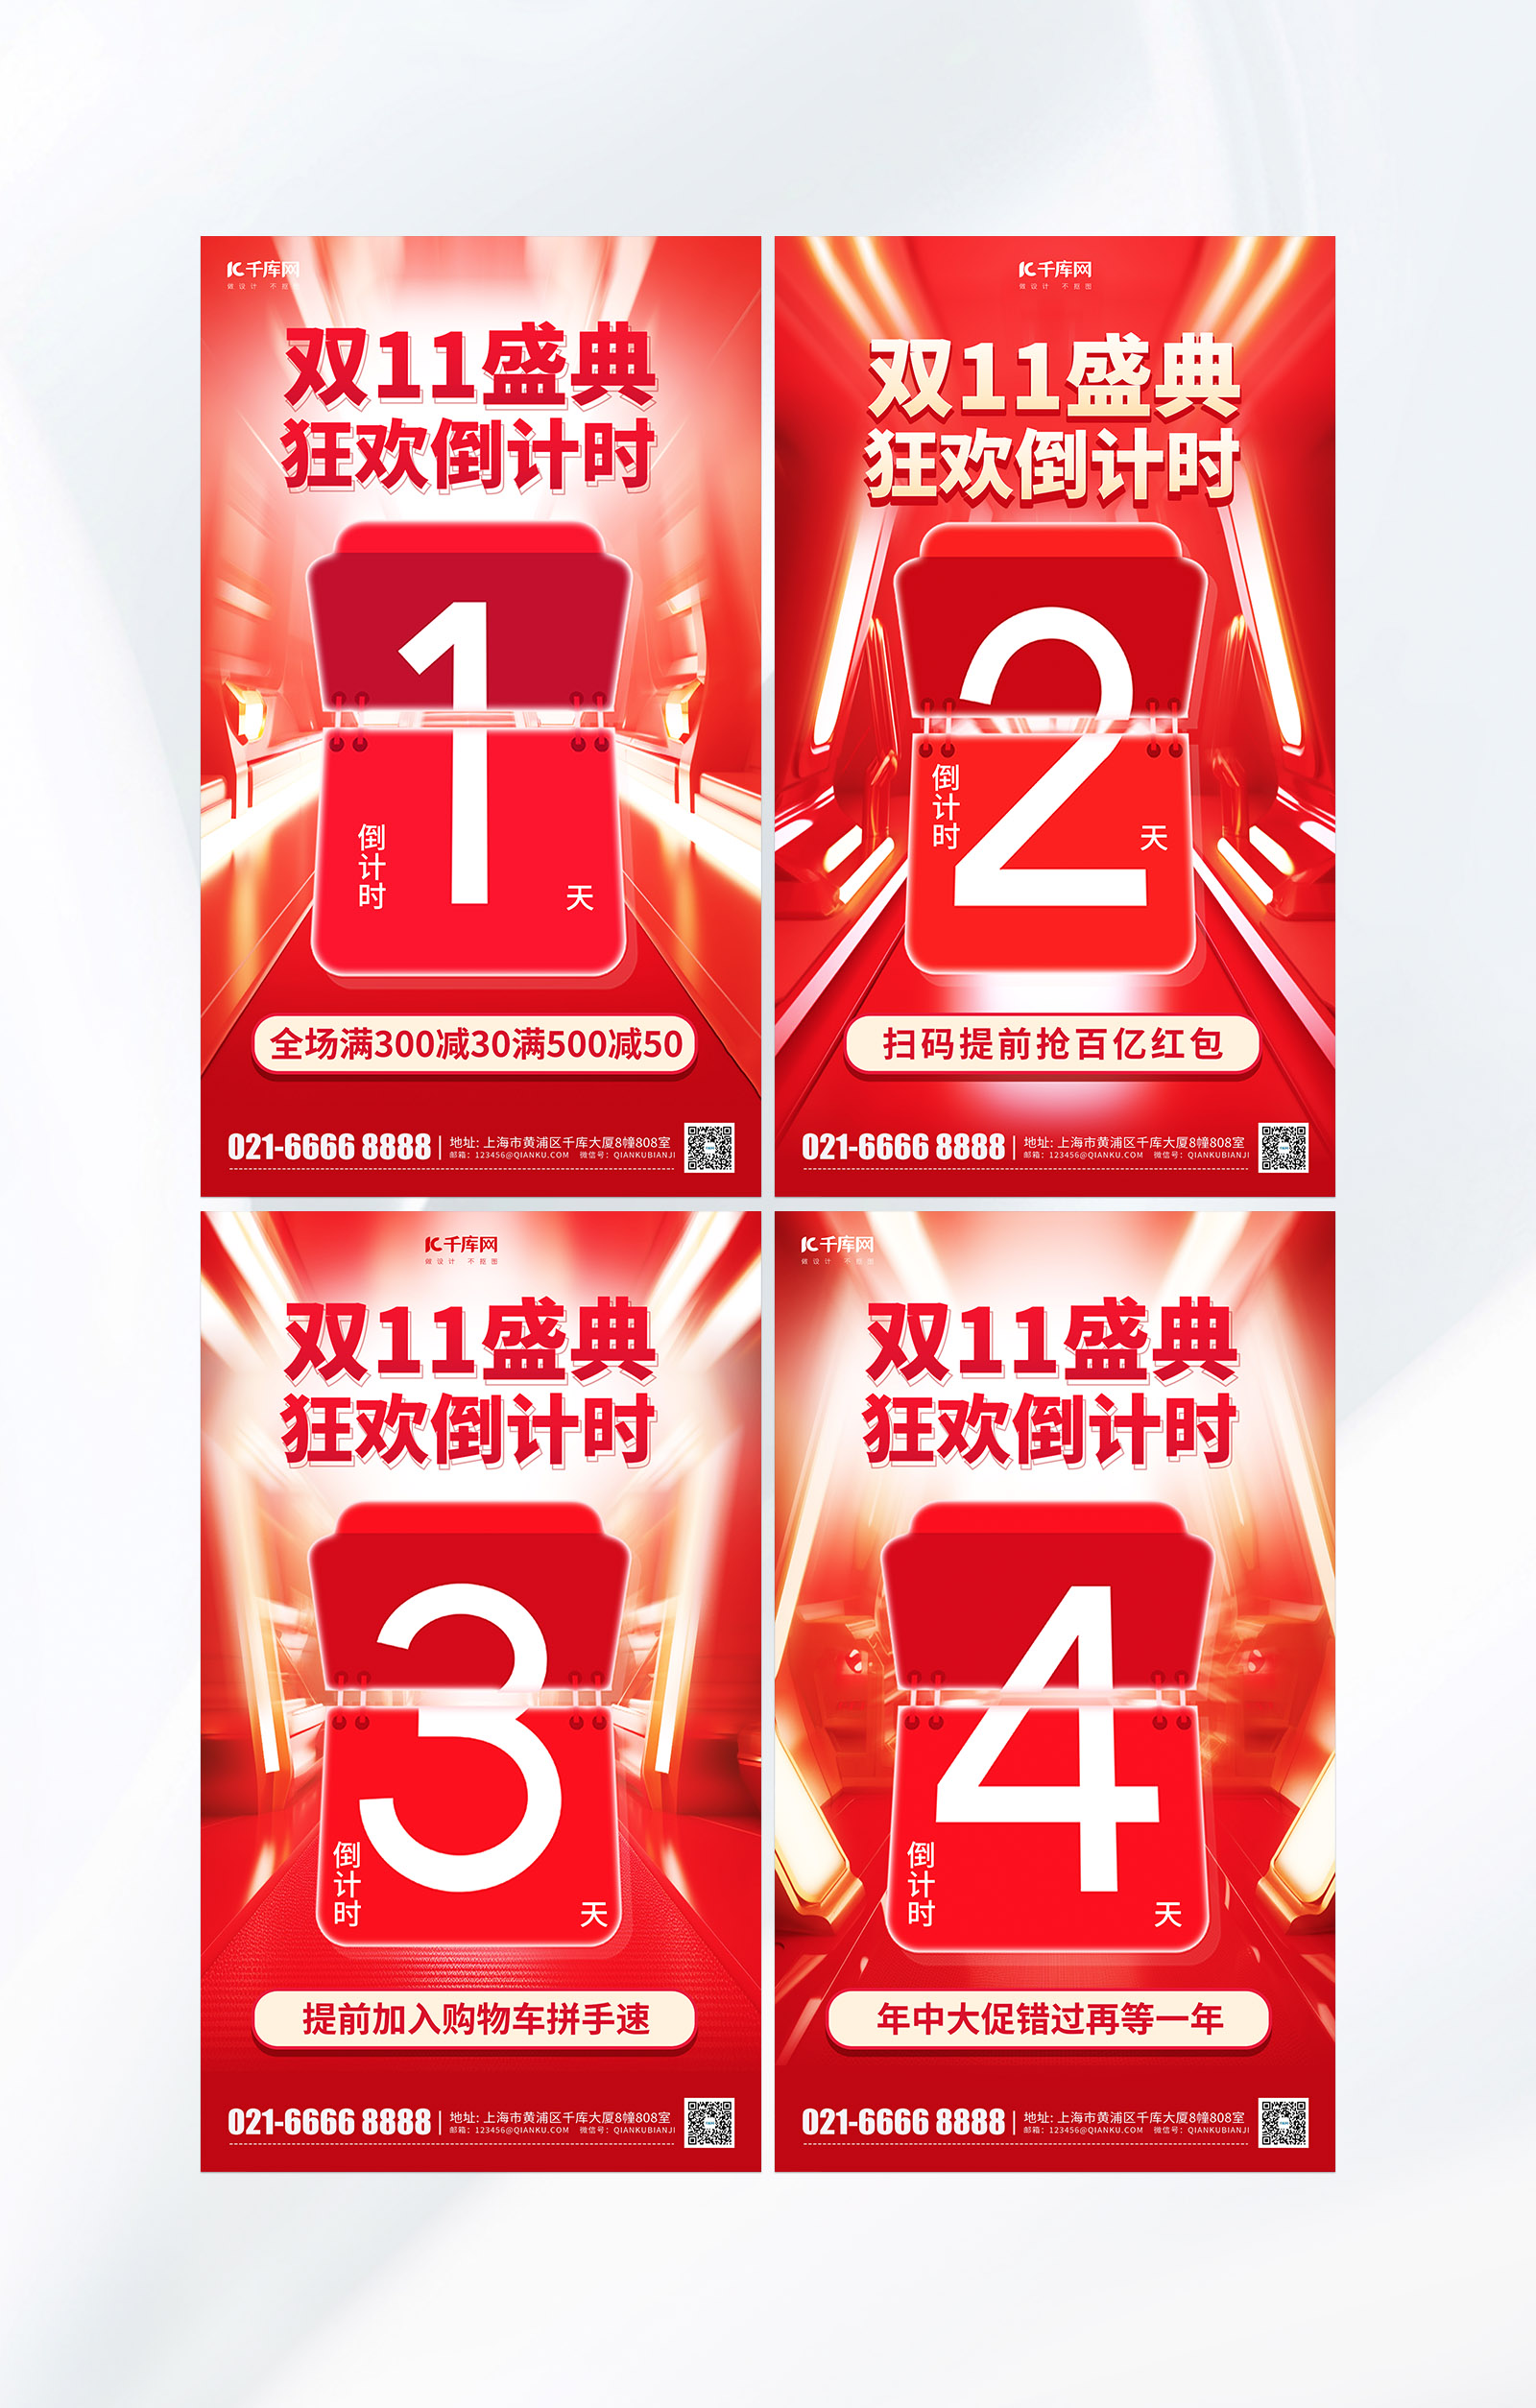 双11狂欢盛典倒计时系列红色电商AIGC海报图片